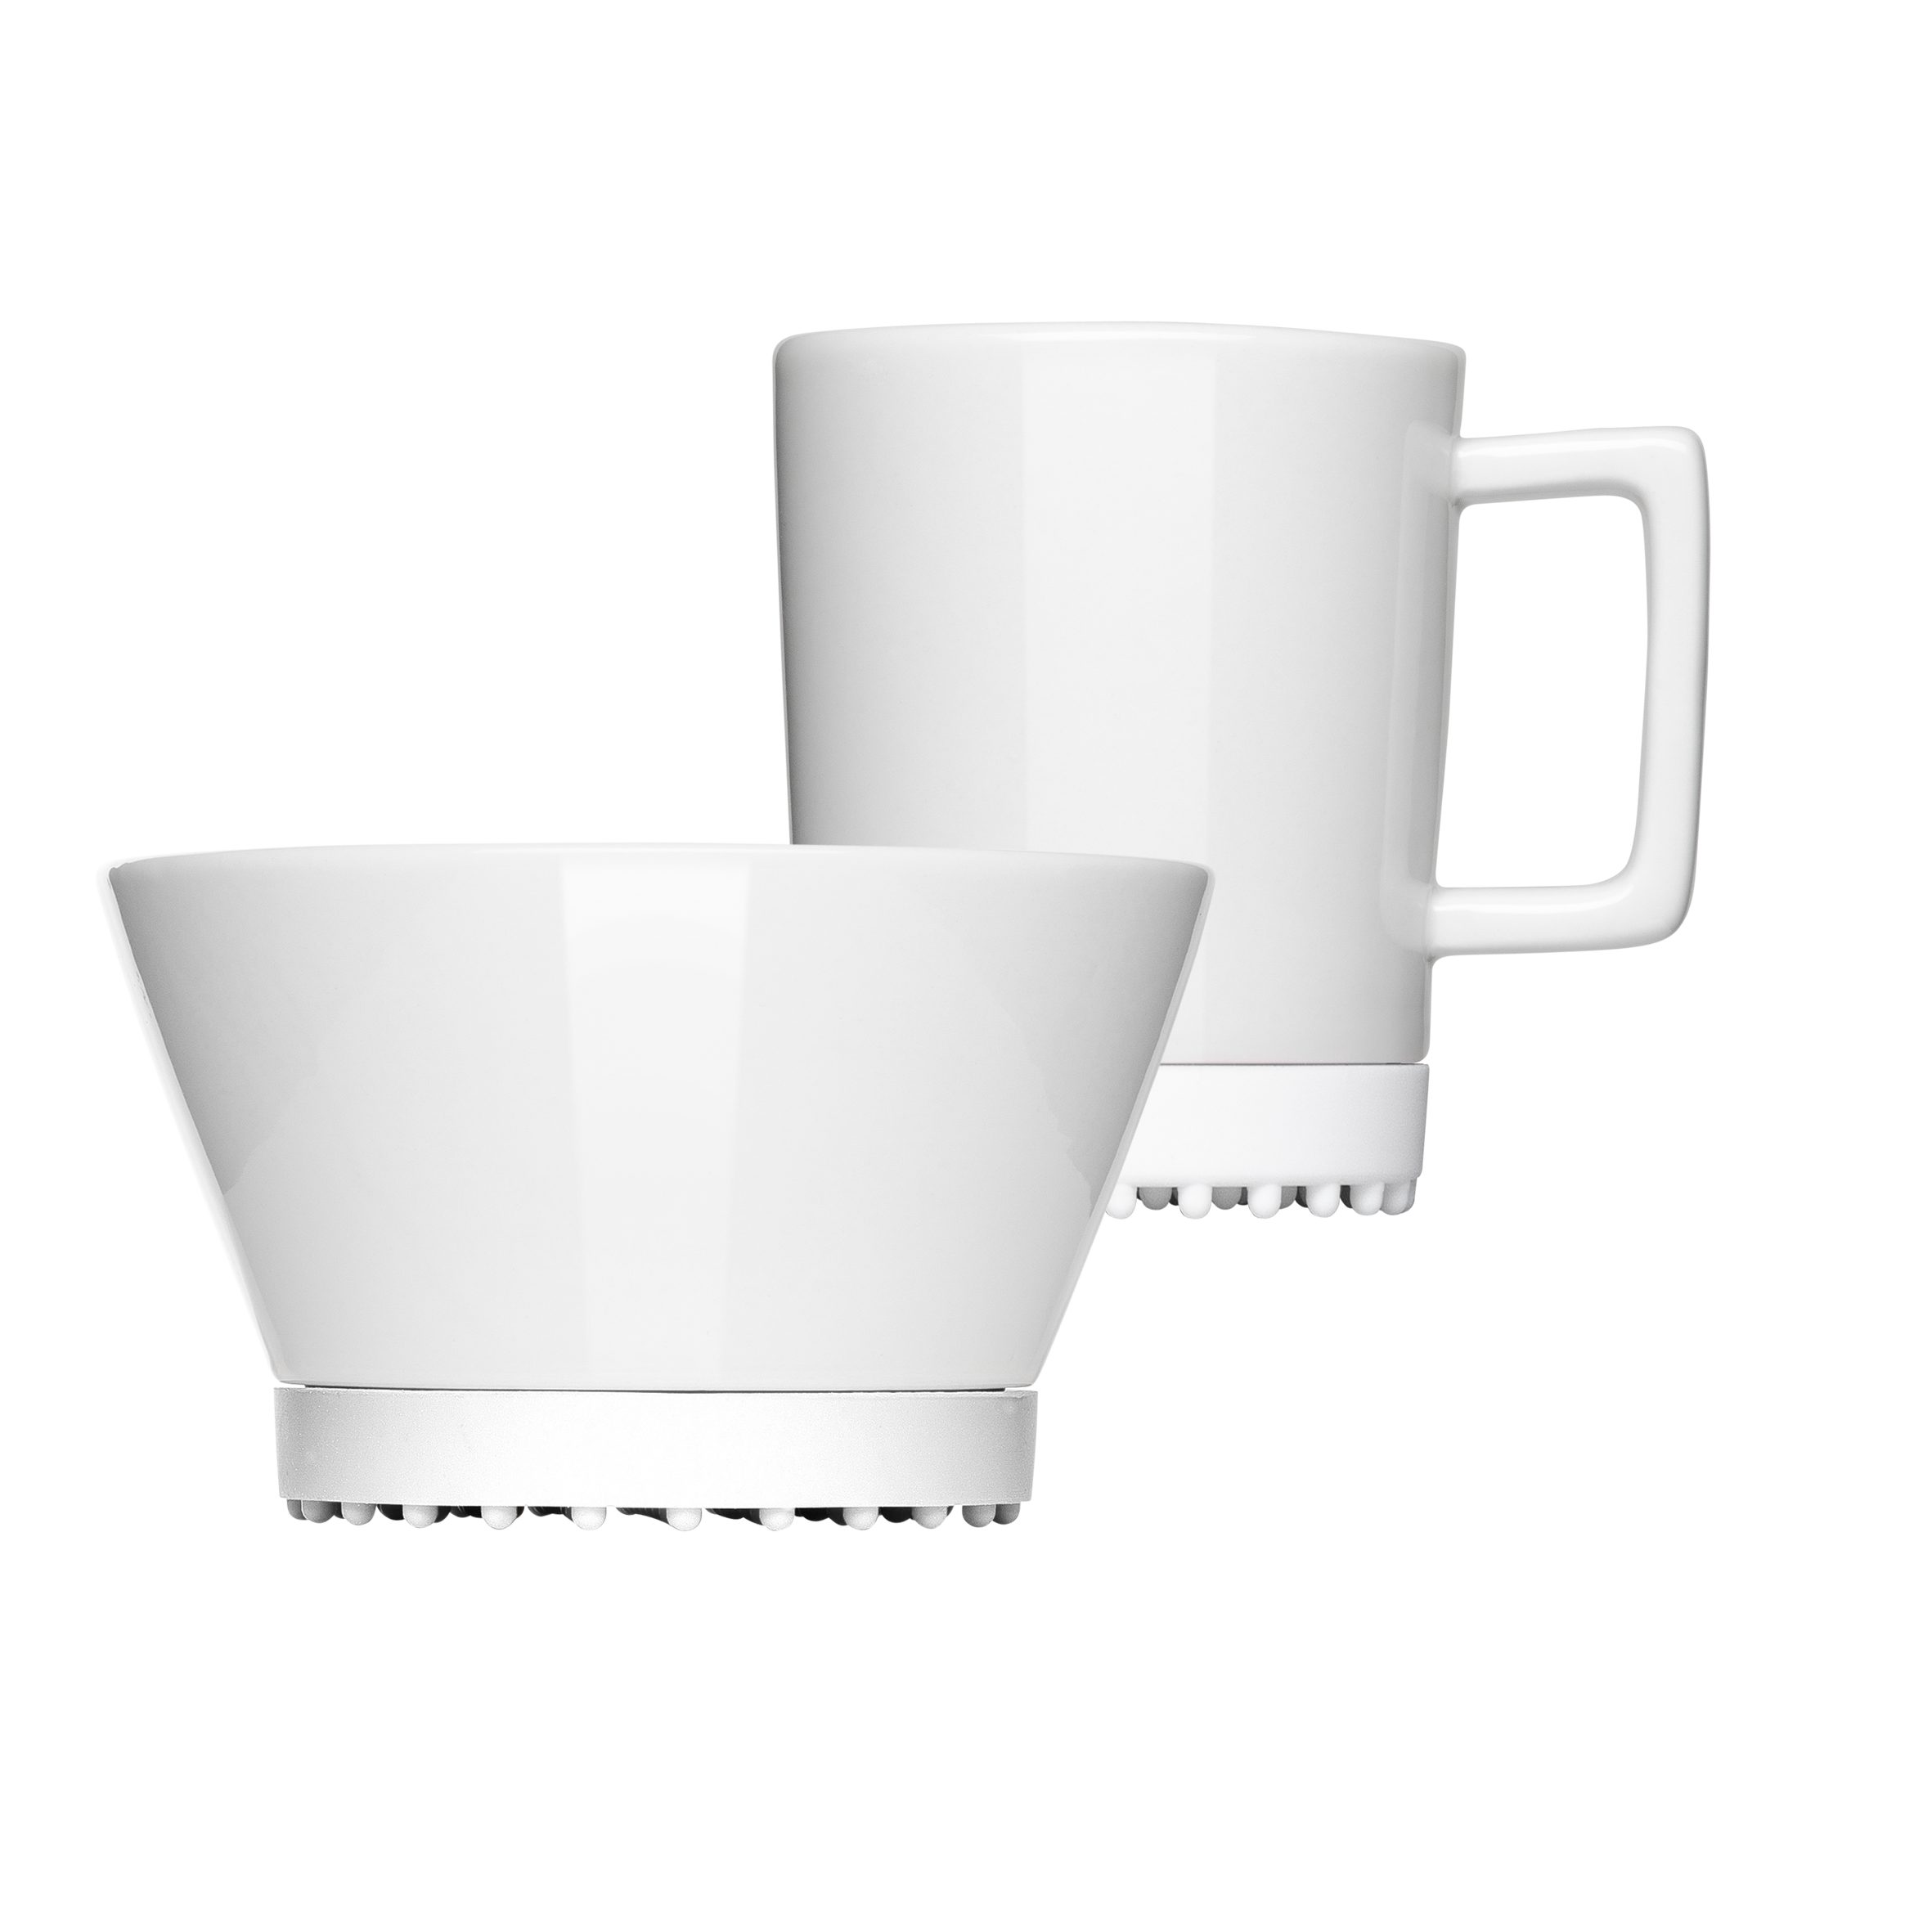 2-teilig, White 1 Porzellan, Frühstücks-Geschirrset Mahlwerck mikrowellengeeignet, spülmaschinengeeignet (2-tlg), Personen, Manufaktur SoftPad Pearl